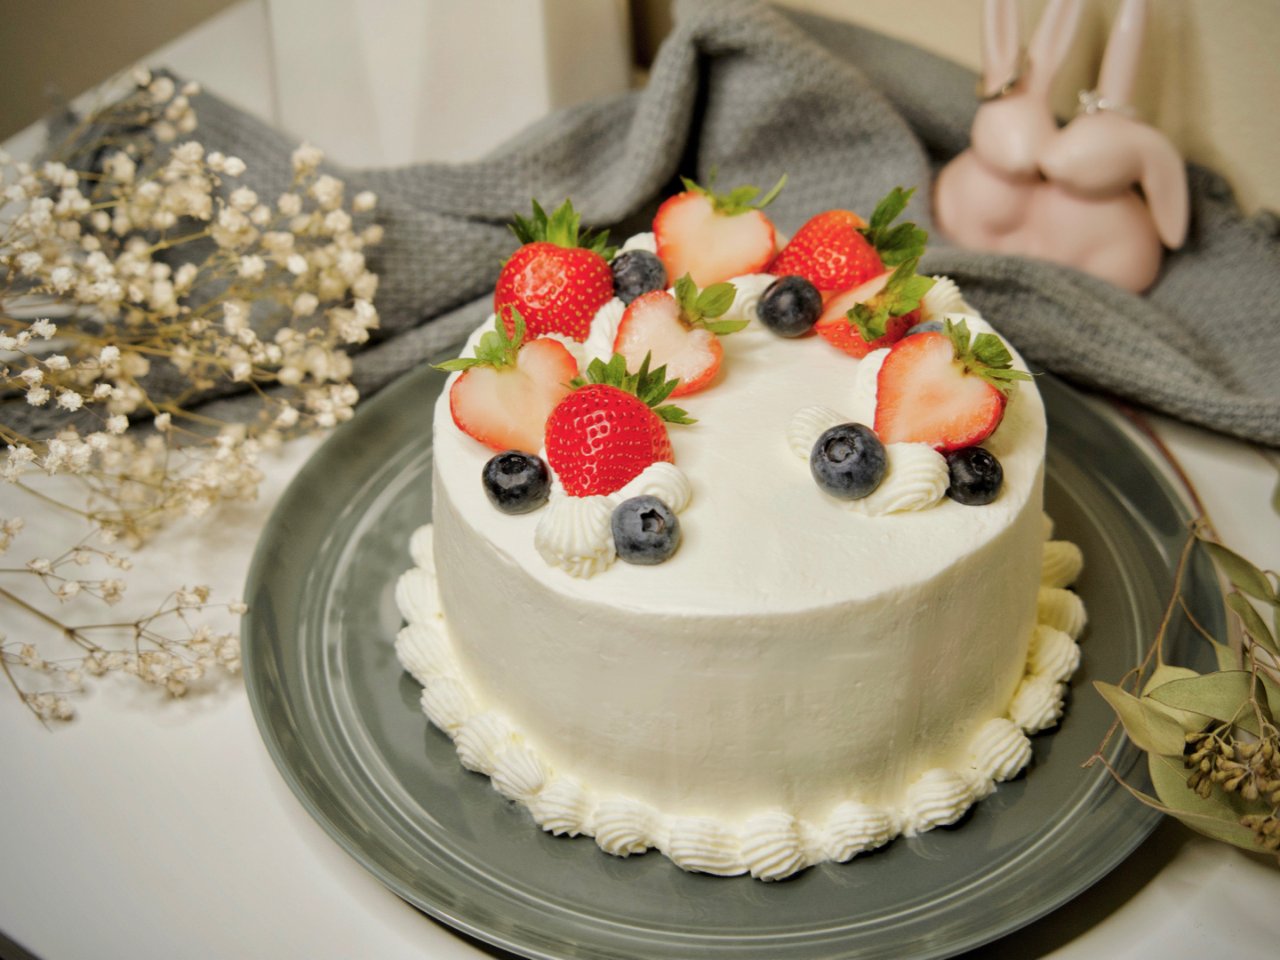 做个🍓蛋糕㊗️自己生日🎂快乐～...